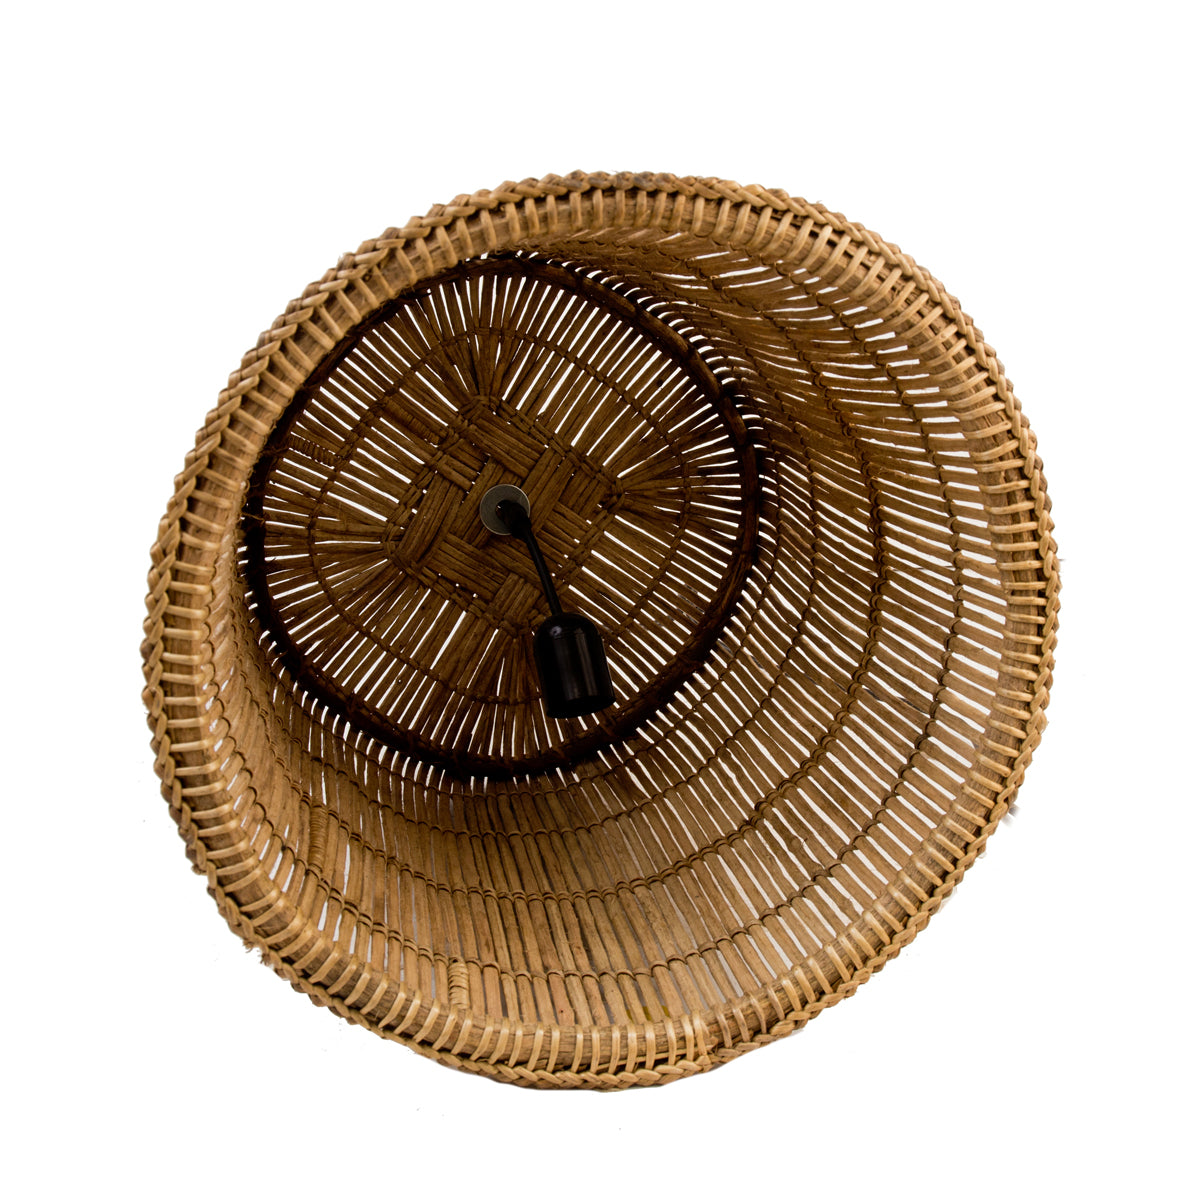 Fishing Basket Light  - Zambia - Natural